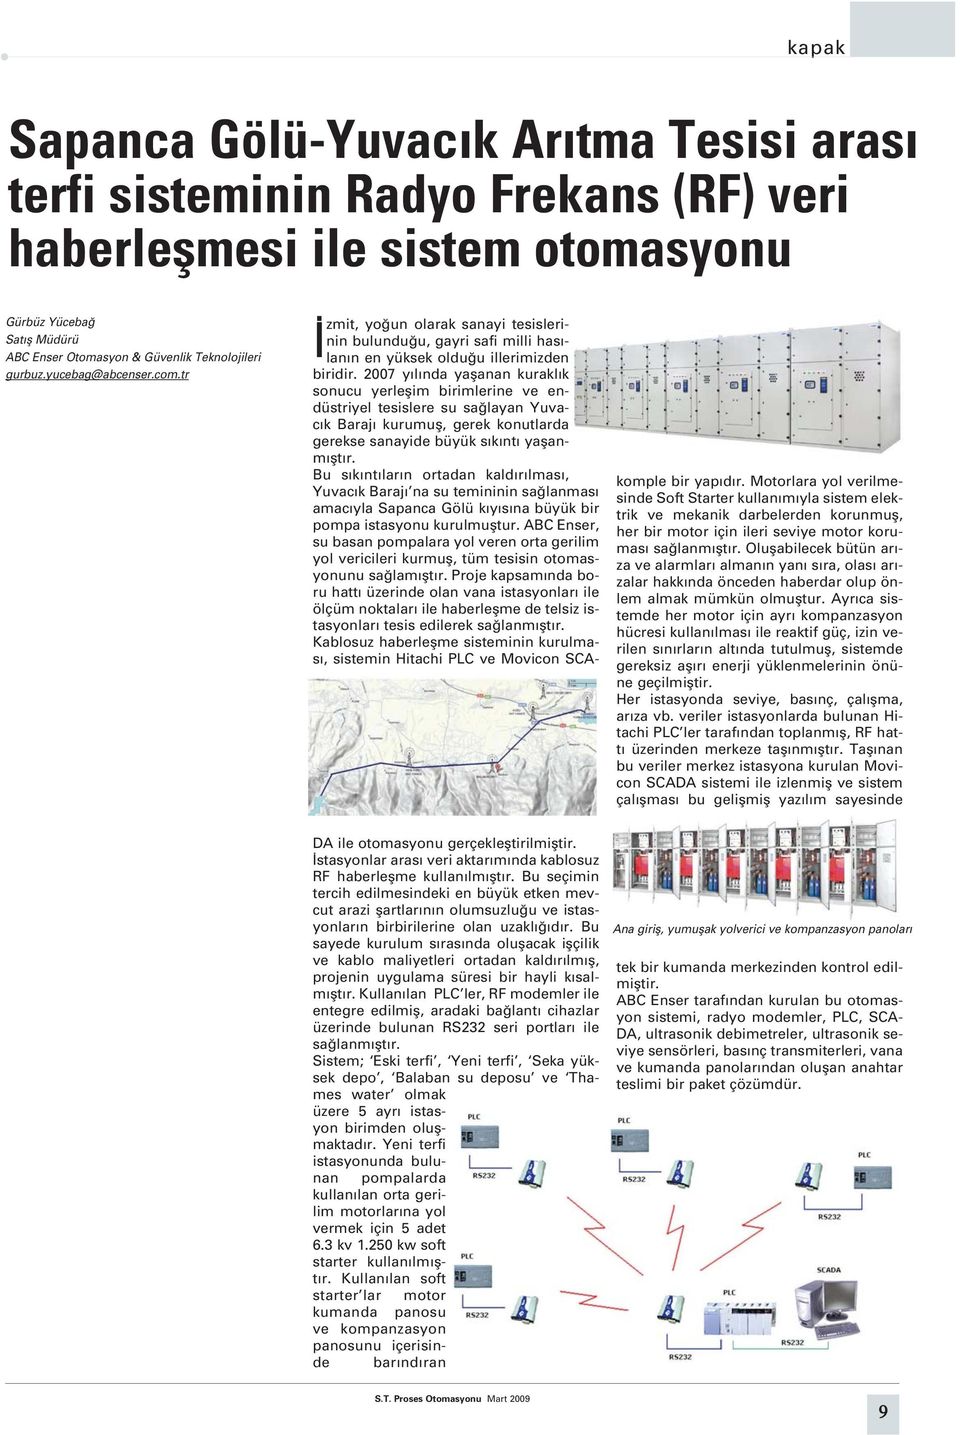 2007 y l nda yaflanan kurakl k sonucu yerleflim birimlerine ve endüstriyel tesislere su sa layan Yuvac k Baraj kurumufl, gerek konutlarda gerekse sanayide büyük s k nt yaflanm flt r.